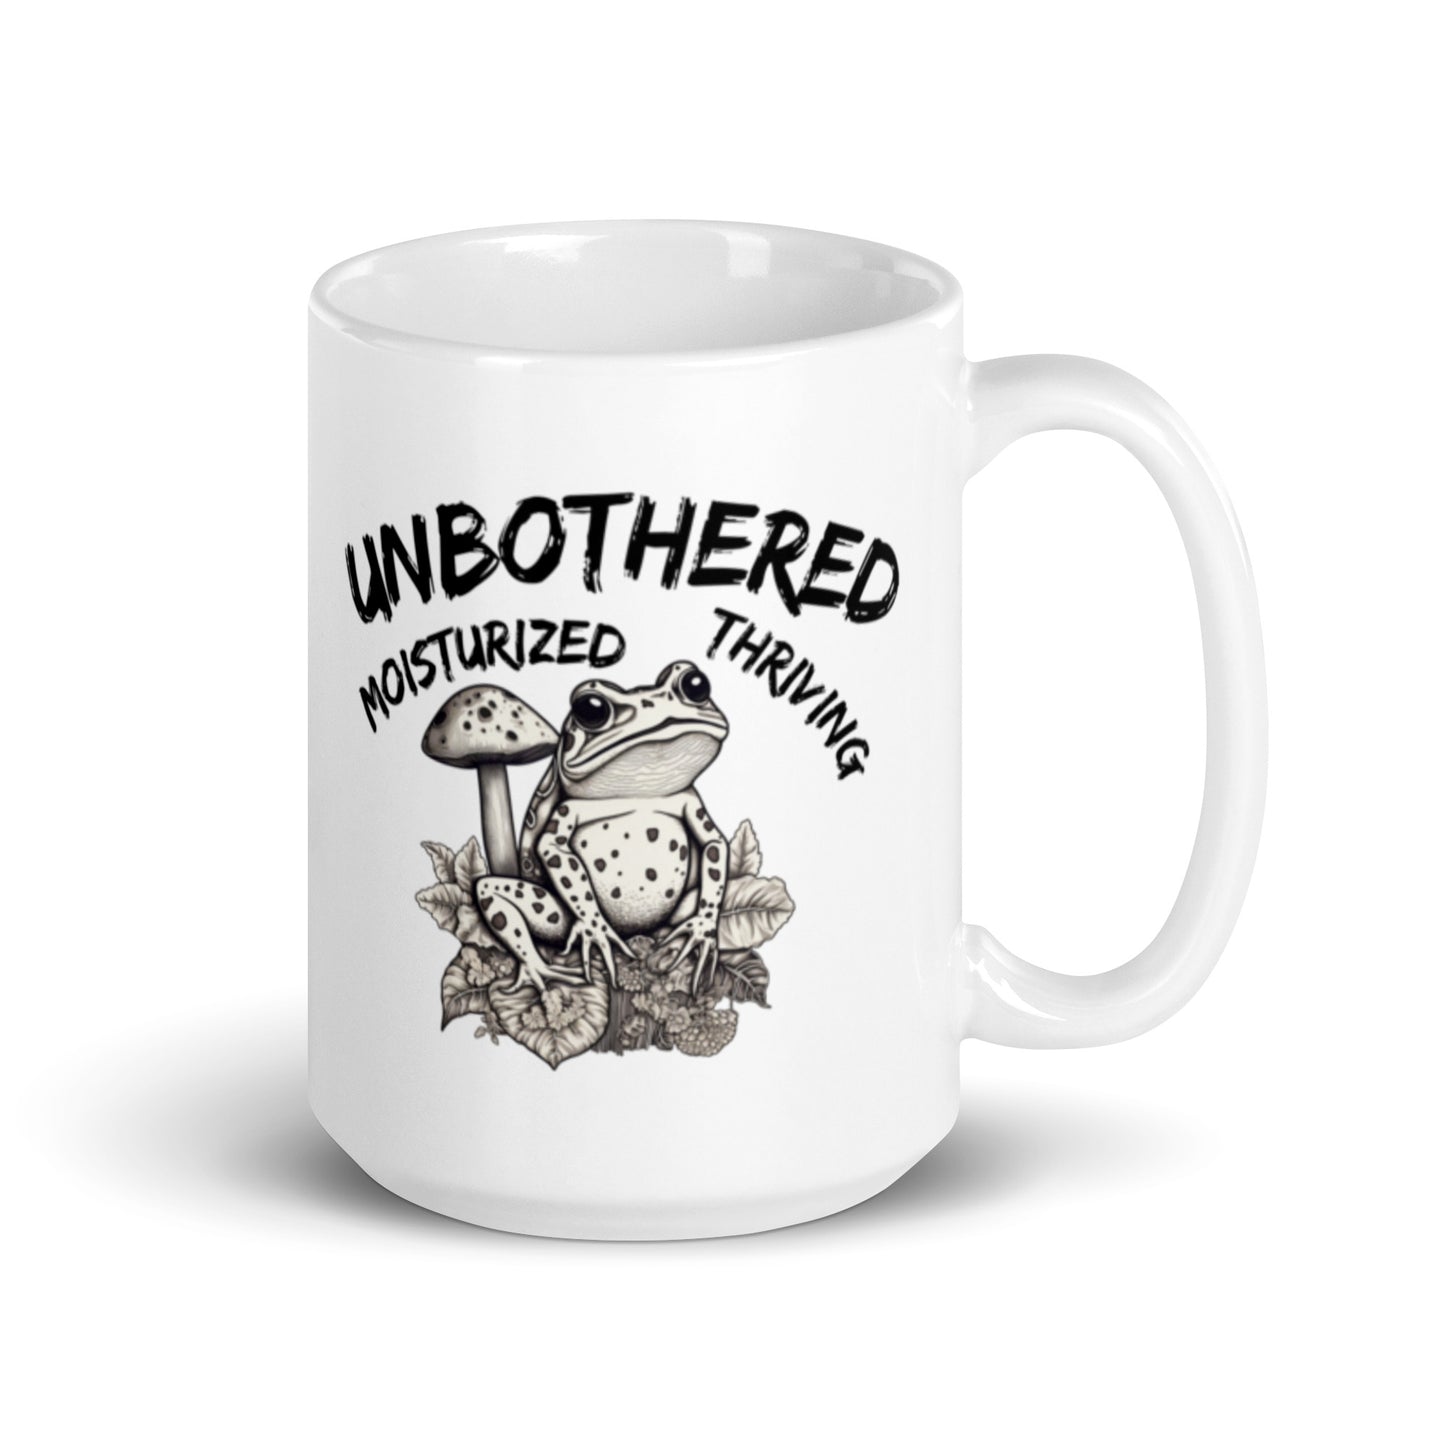 Unbothered, Moisturized, Thriving Mug